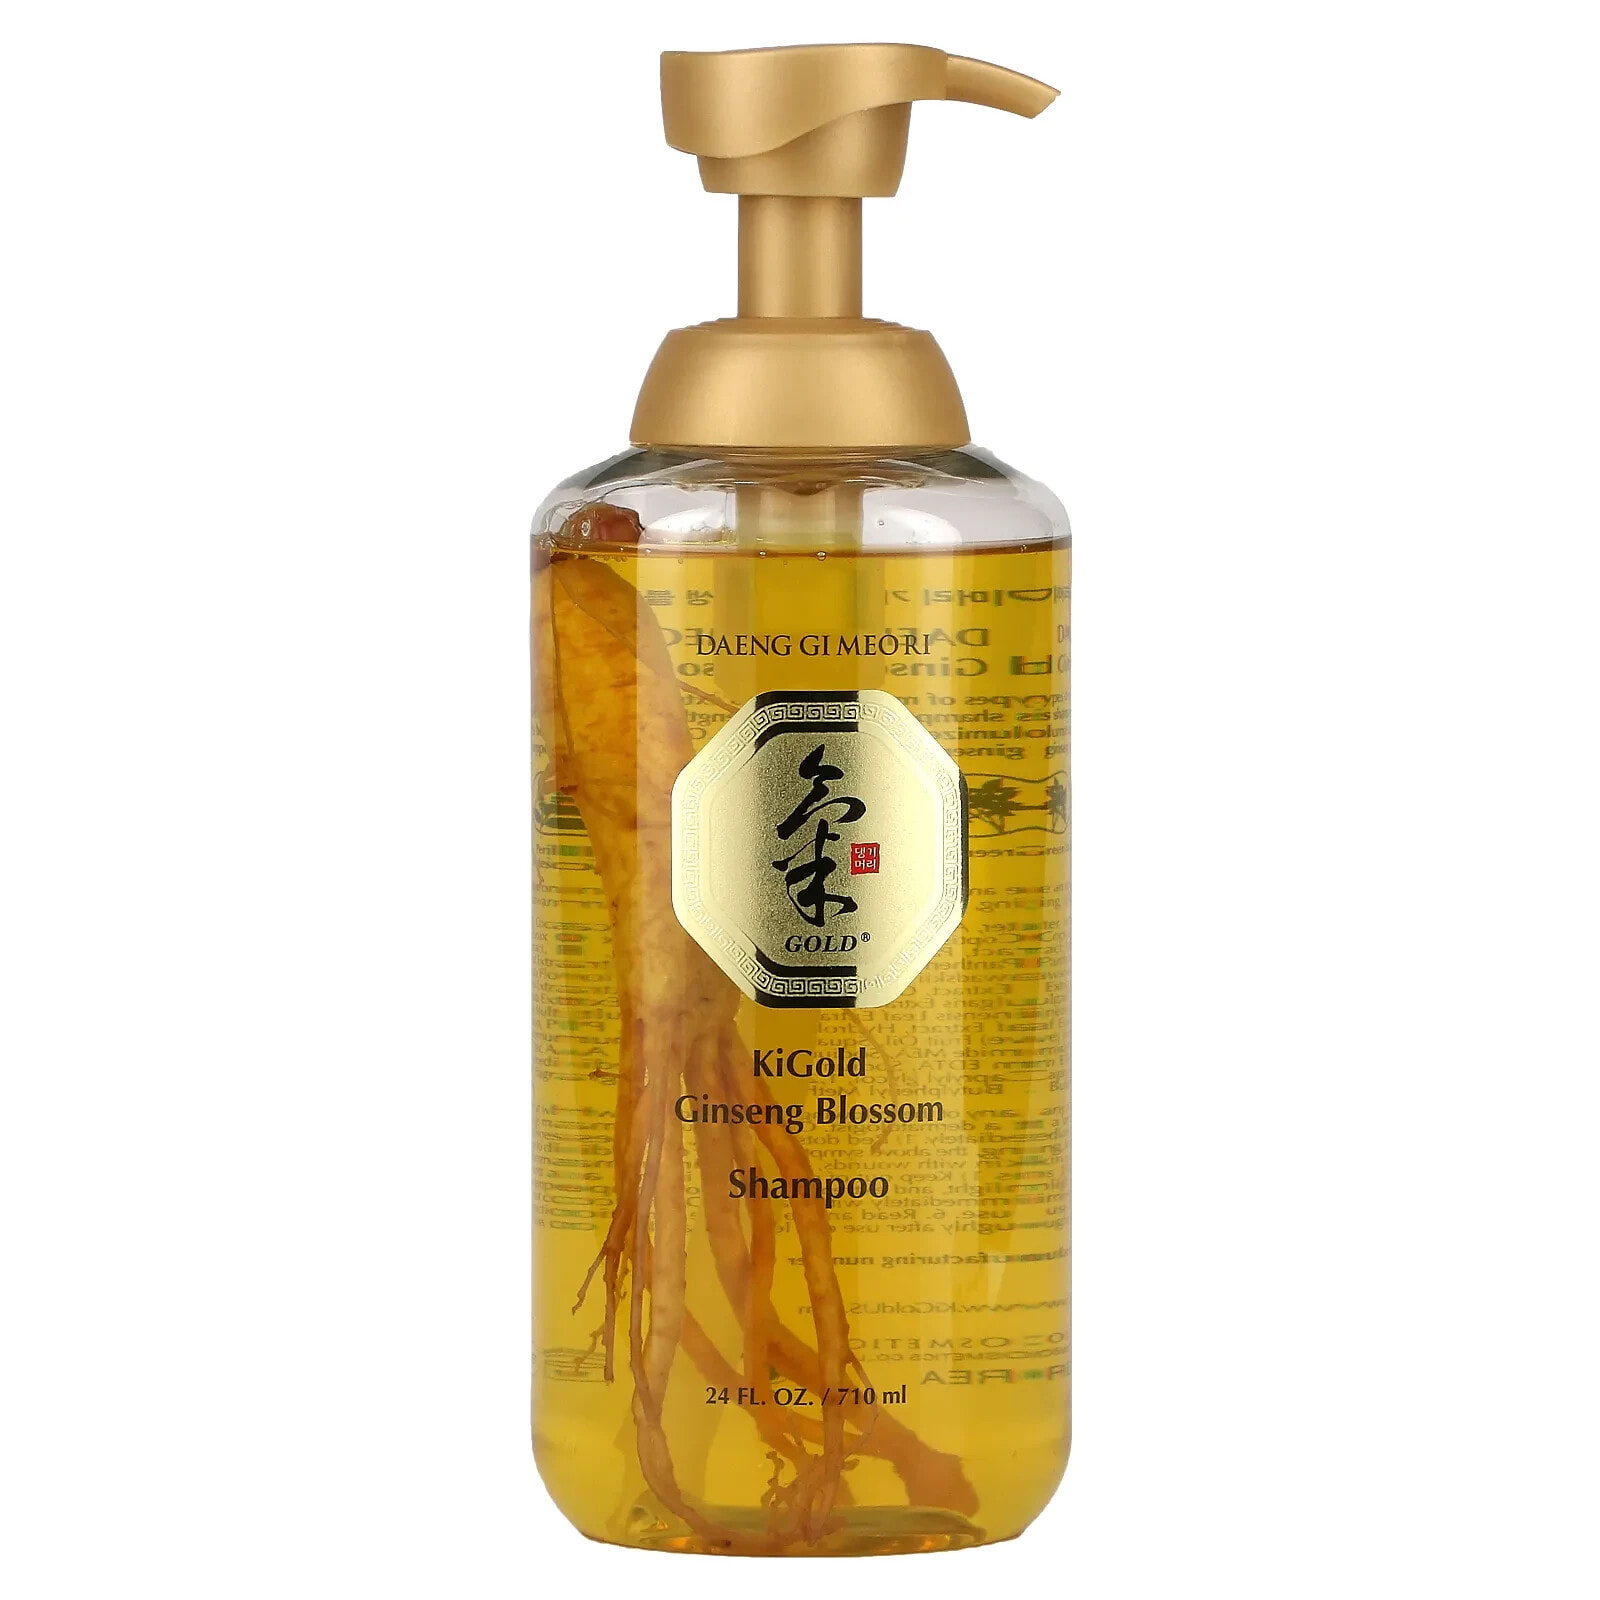 KiGold Ginseng Blossom Shampoo, 24 fl oz (710 ml)